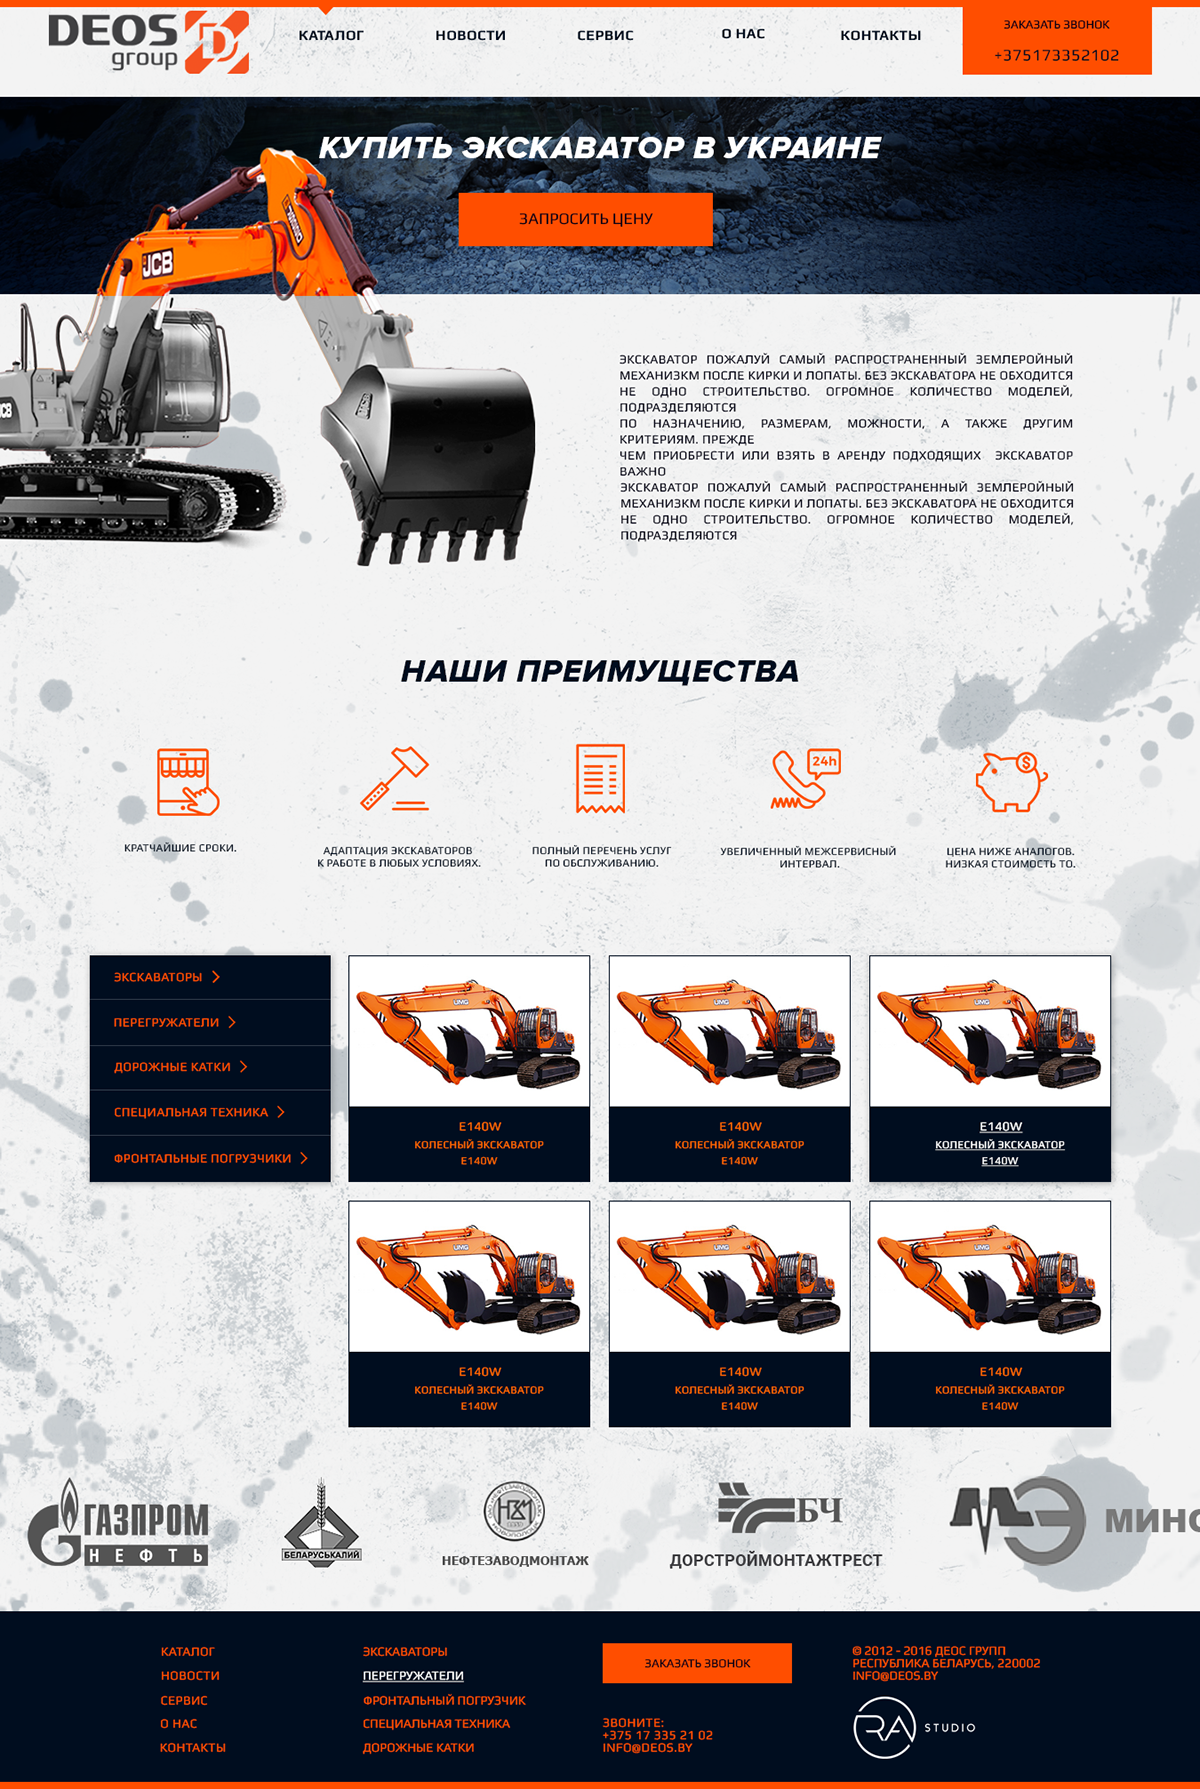 #экскаваторы #экскаватор #трактор #спецтехника #excavator #specialequipment #Minsk #строительнаятехника